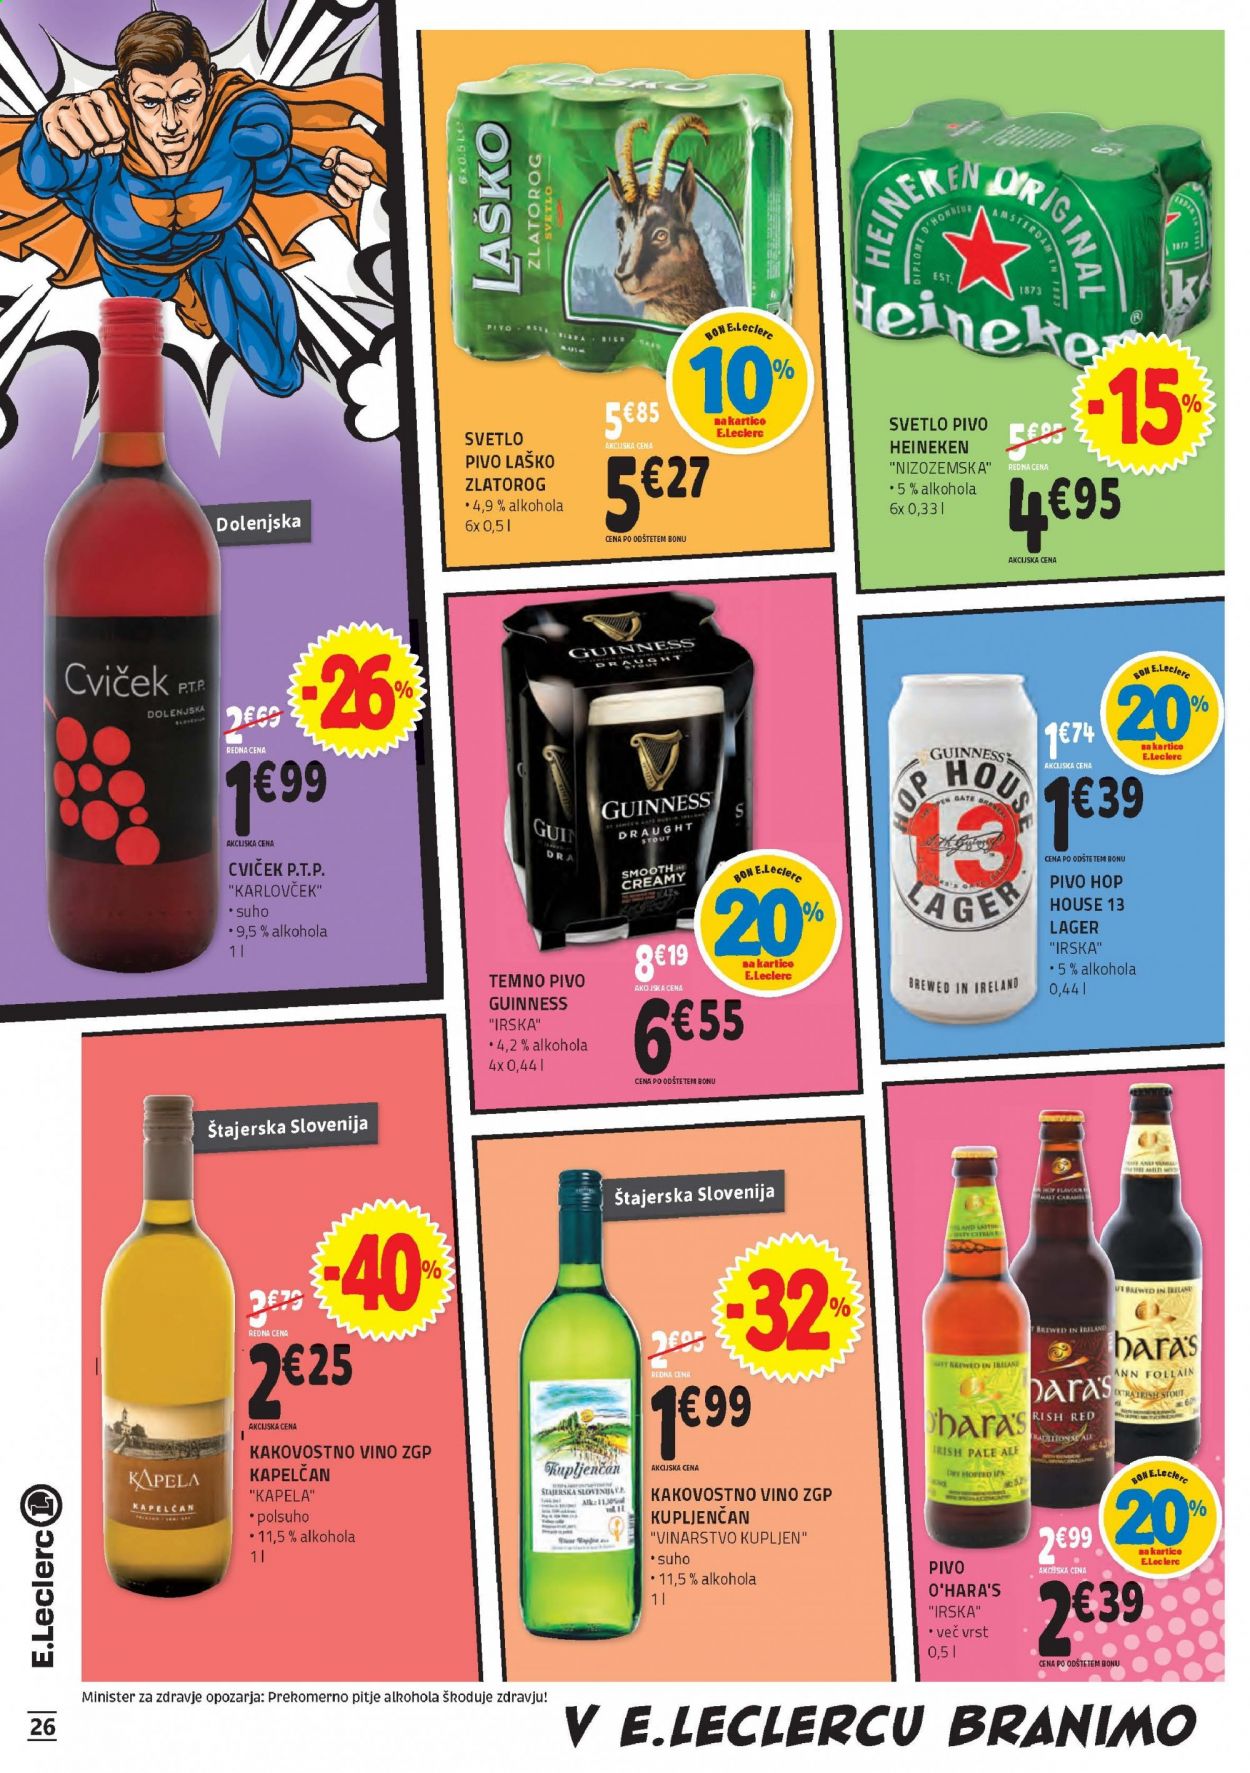 thumbnail - E.Leclerc katalog - 7.4.2021 - 17.4.2021 - Ponudba izdelkov - Heineken, Laško Žlatorog, svetlo pivo, temno pivo, pivo, vino. Stran 26.